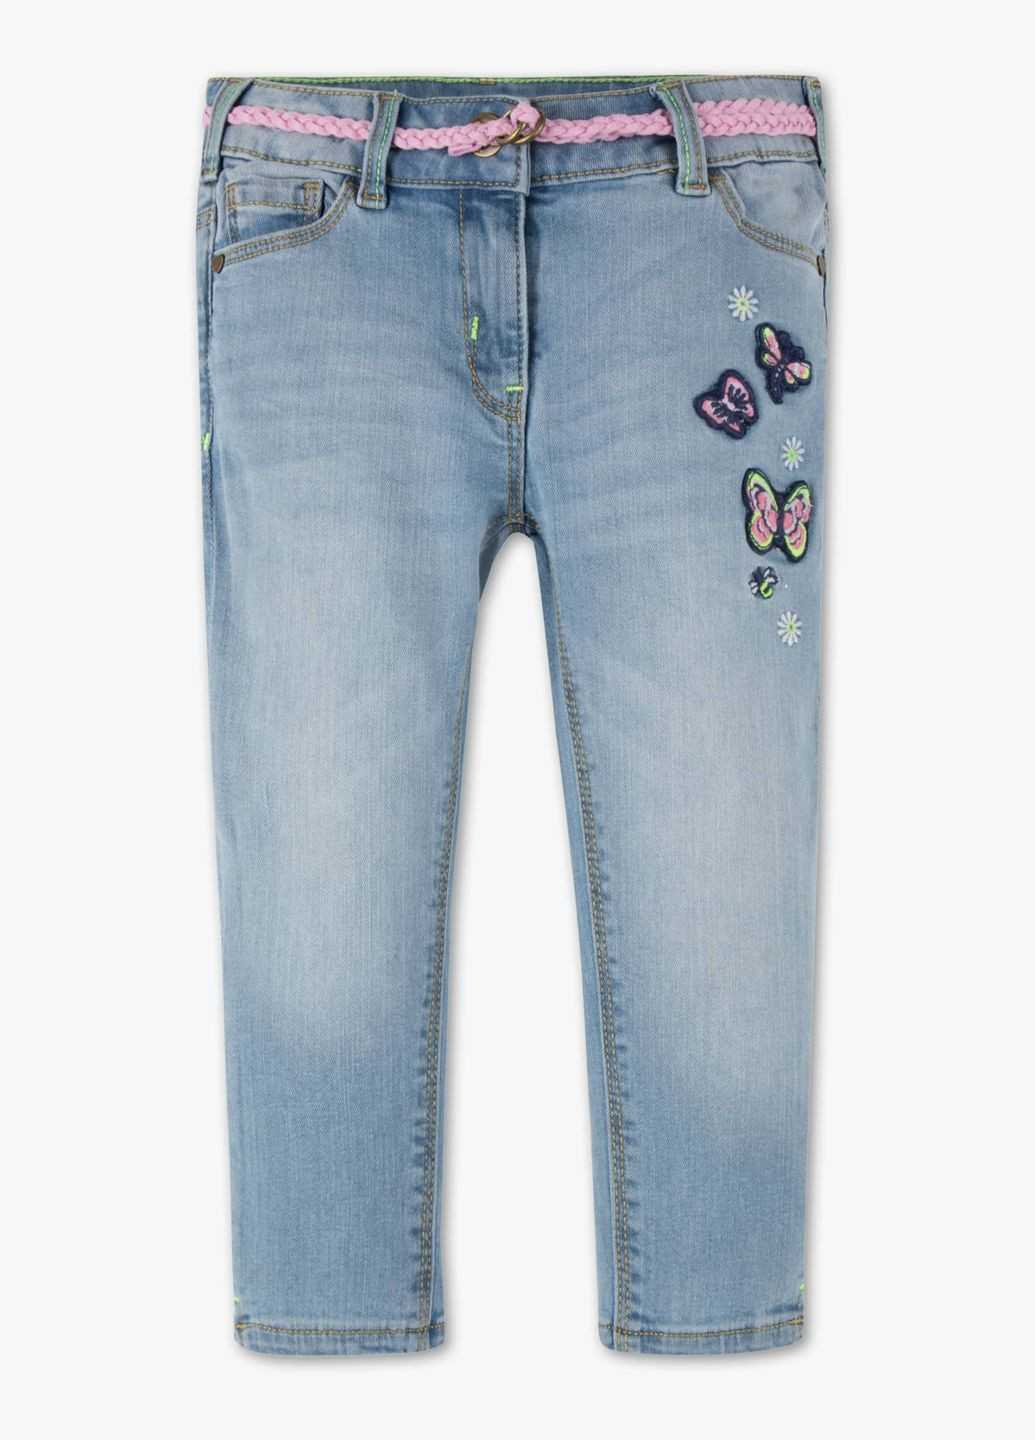 Голубые демисезонные джинсы для девочки 116 размер голубые 2003327 C&A